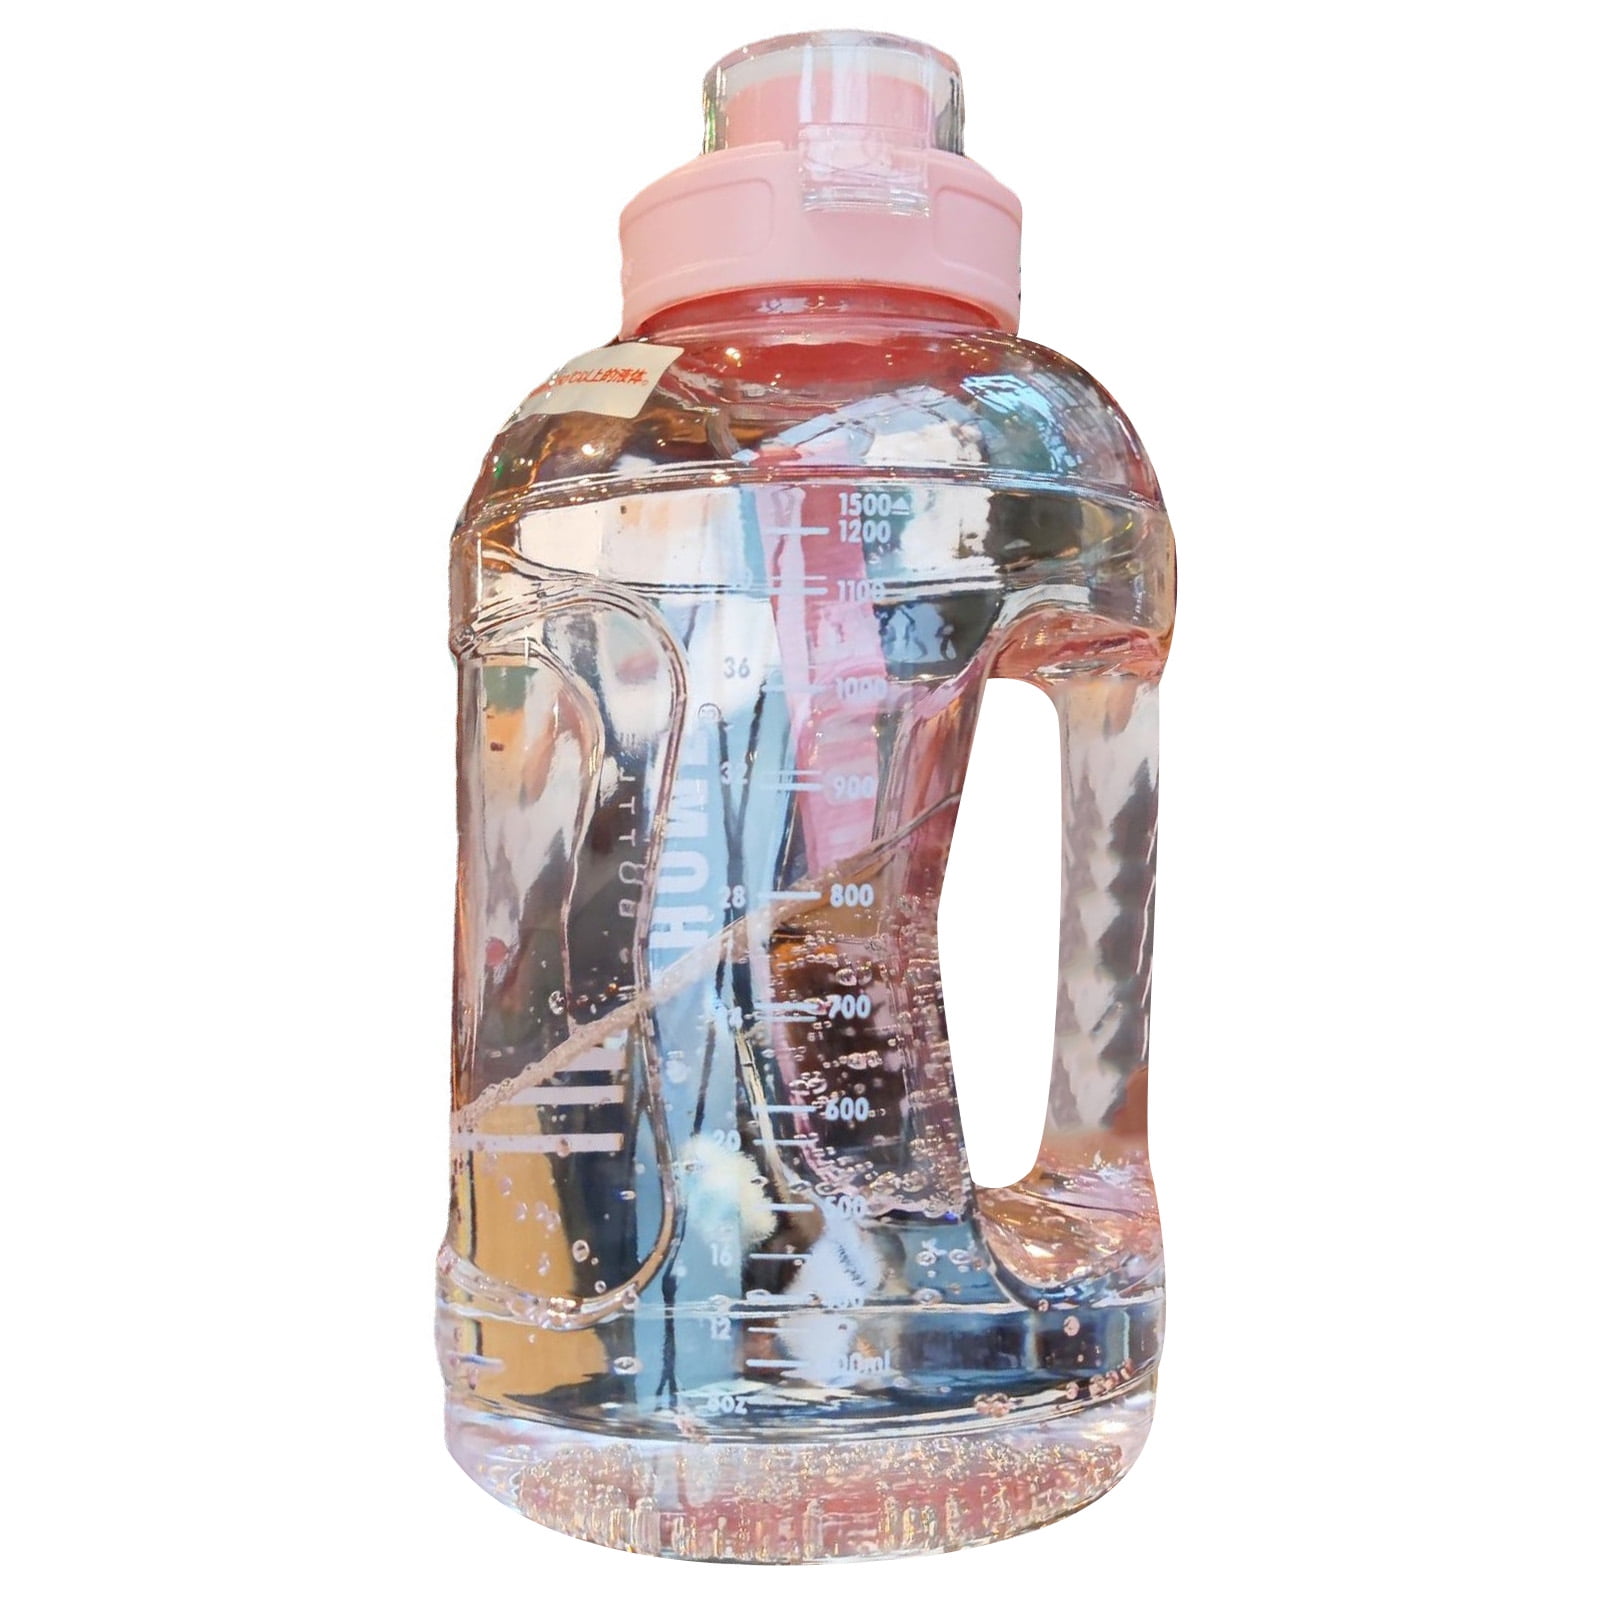 US$ 15.98 - Large Capacity Plastic Water Bottles 2-Pack Leak-Proof